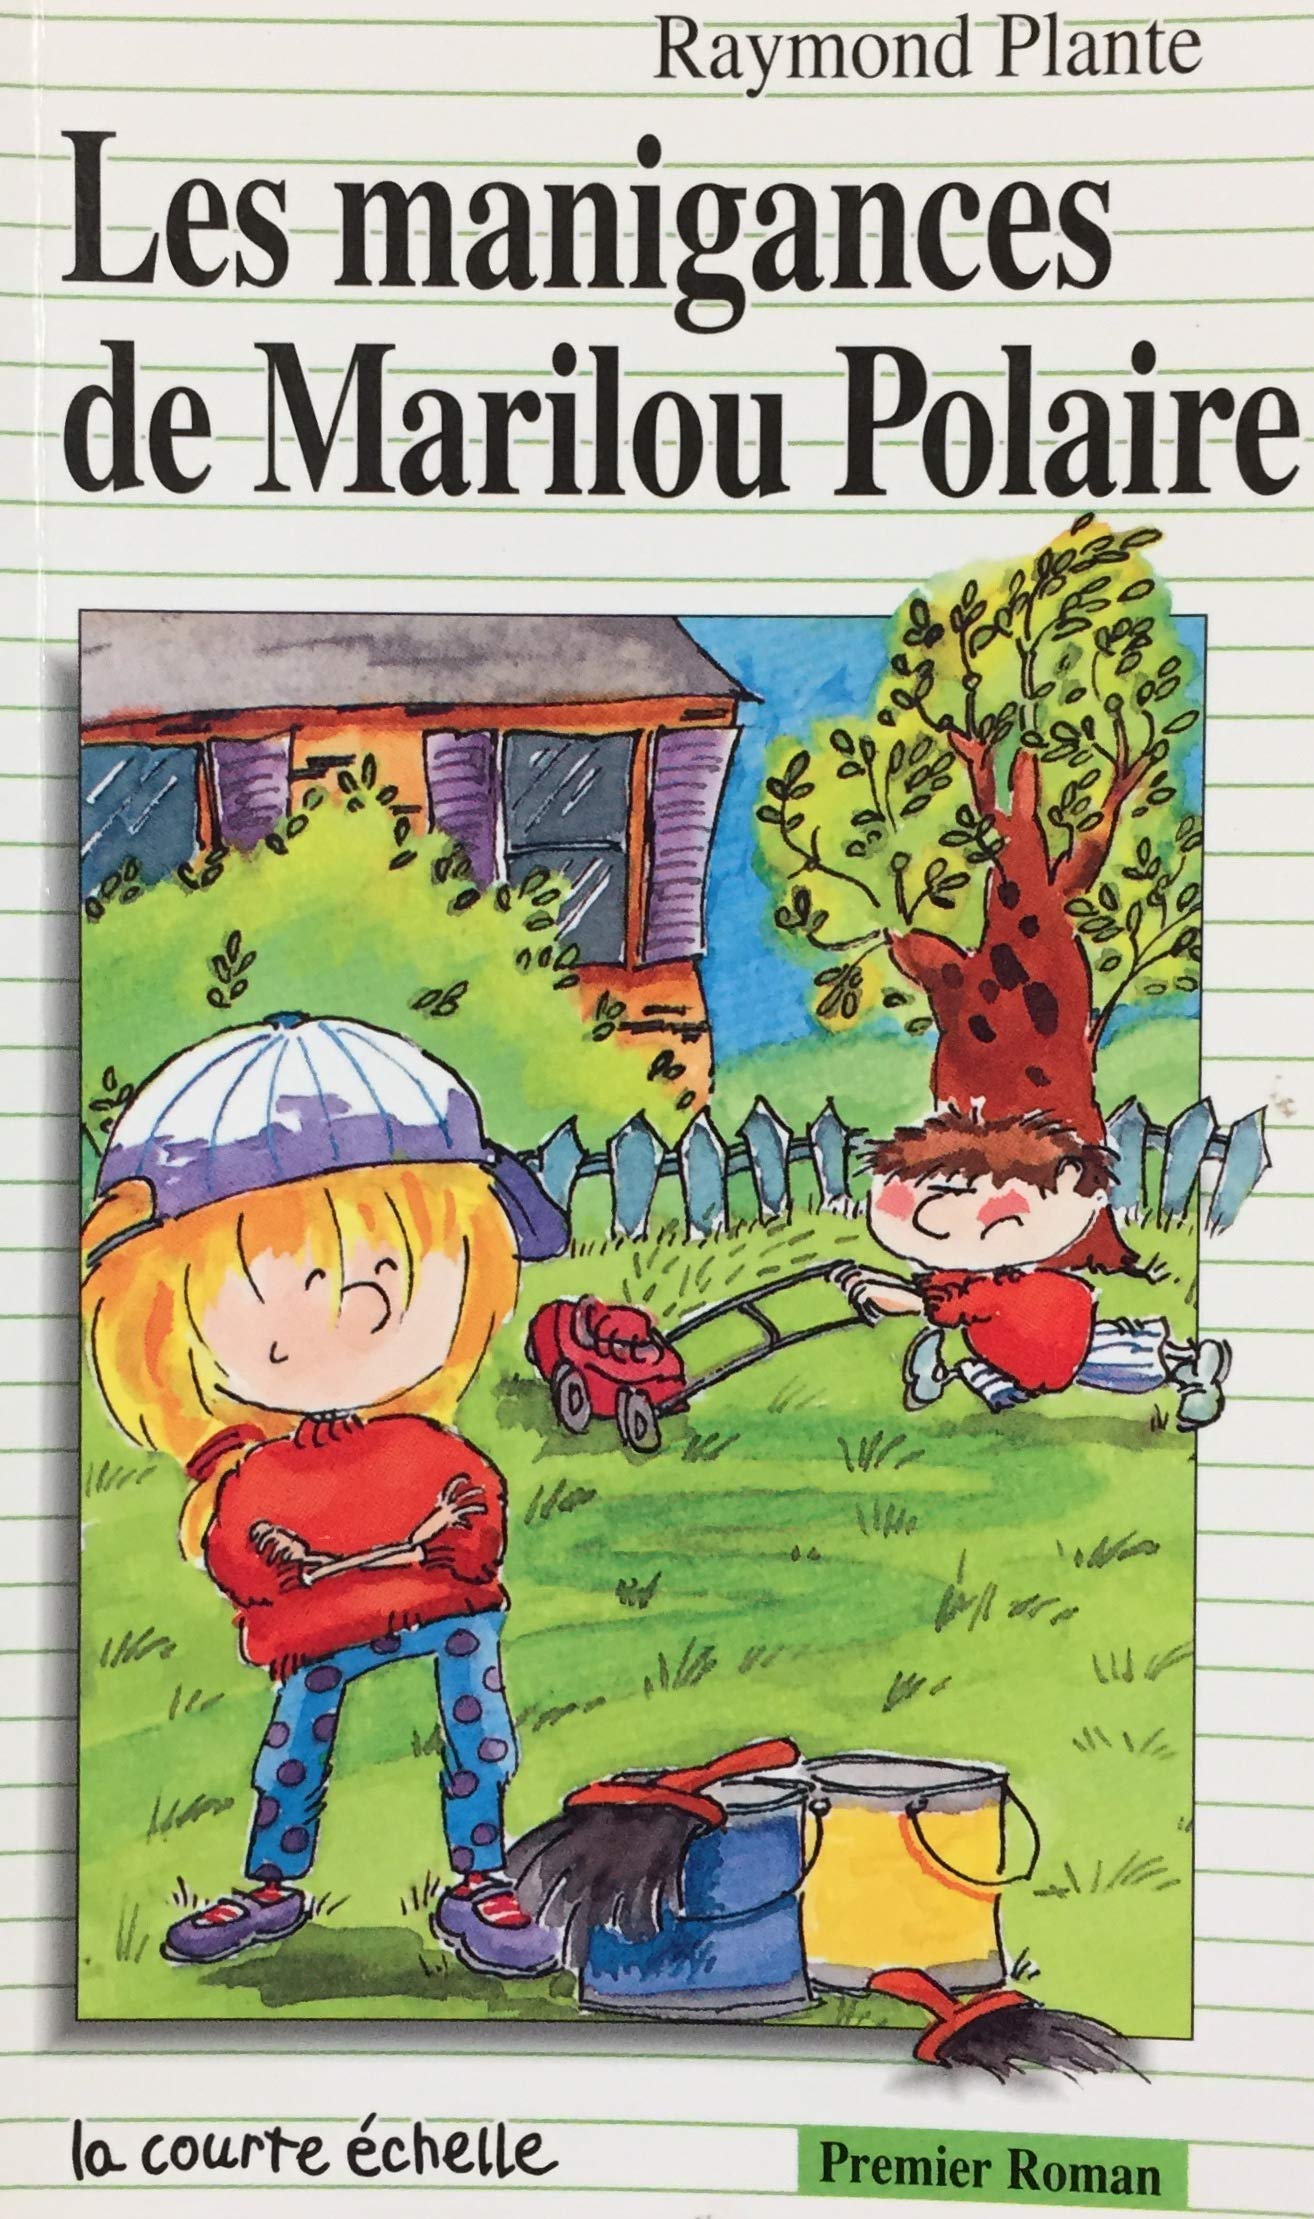 Livre ISBN 2890212742 Premier roman # 53 : Les manigances de Marilou Polaire (Raymond Plante)